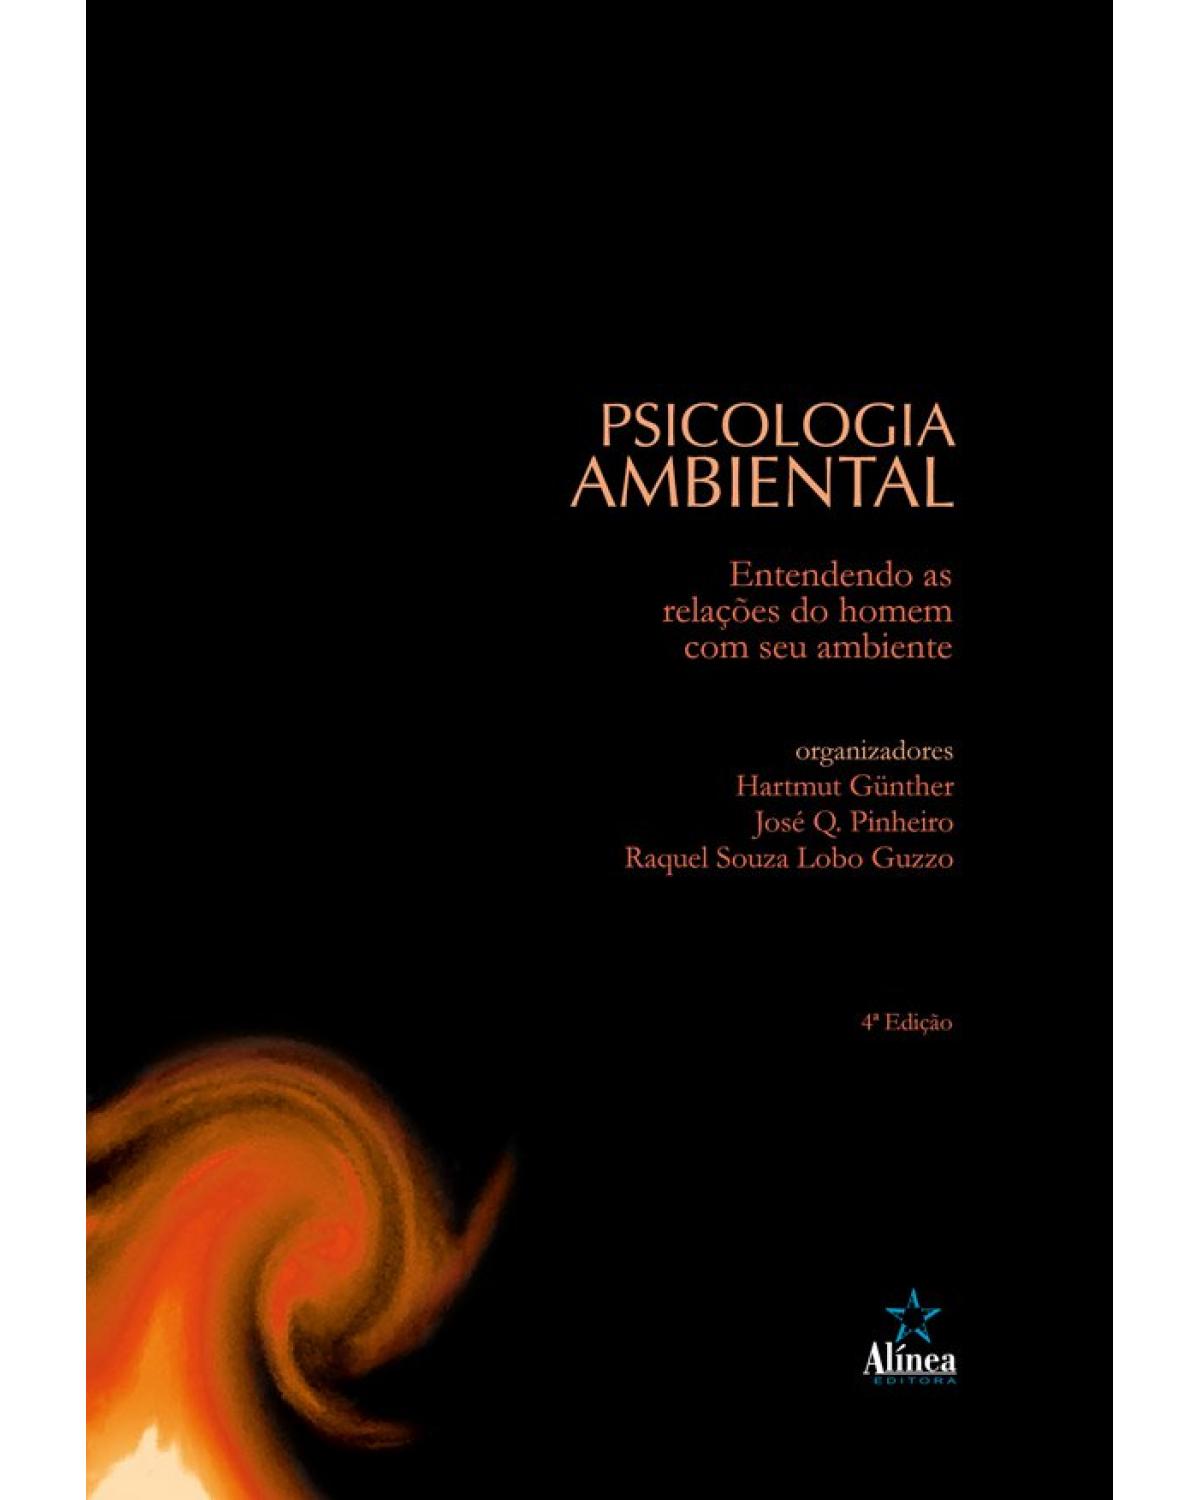 Psicologia ambiental: Entendendo as relações do homem com seu ambiente - 4ª Edição | 2019